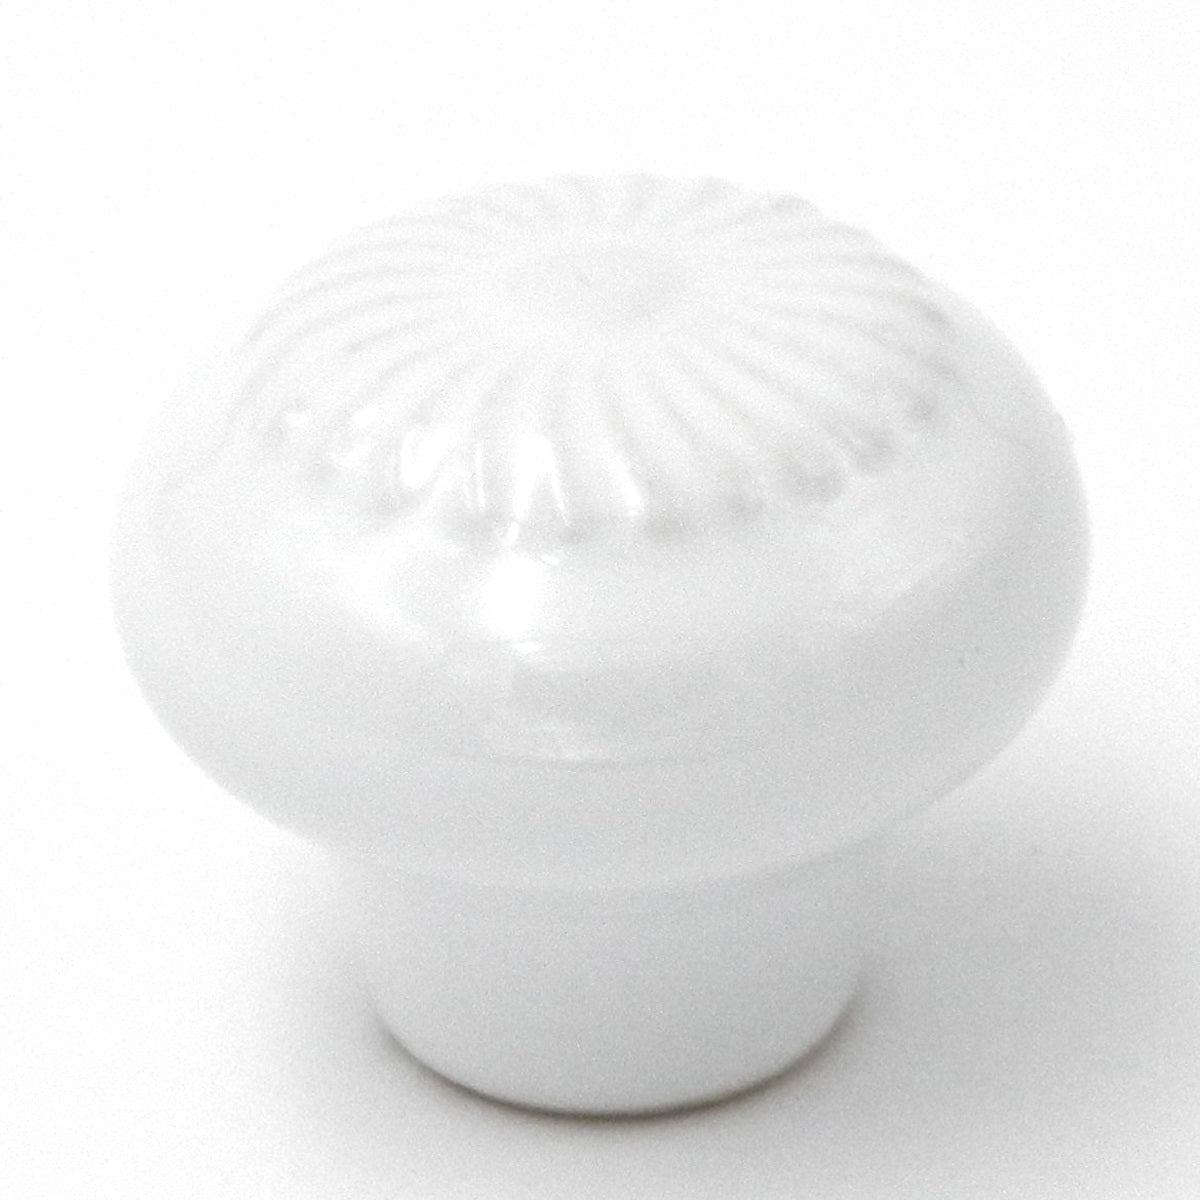 Hickory Hardware English Cozy - Perilla redonda para gabinete de porcelana, color blanco, 1 1/4 pulgadas, PA0312-W